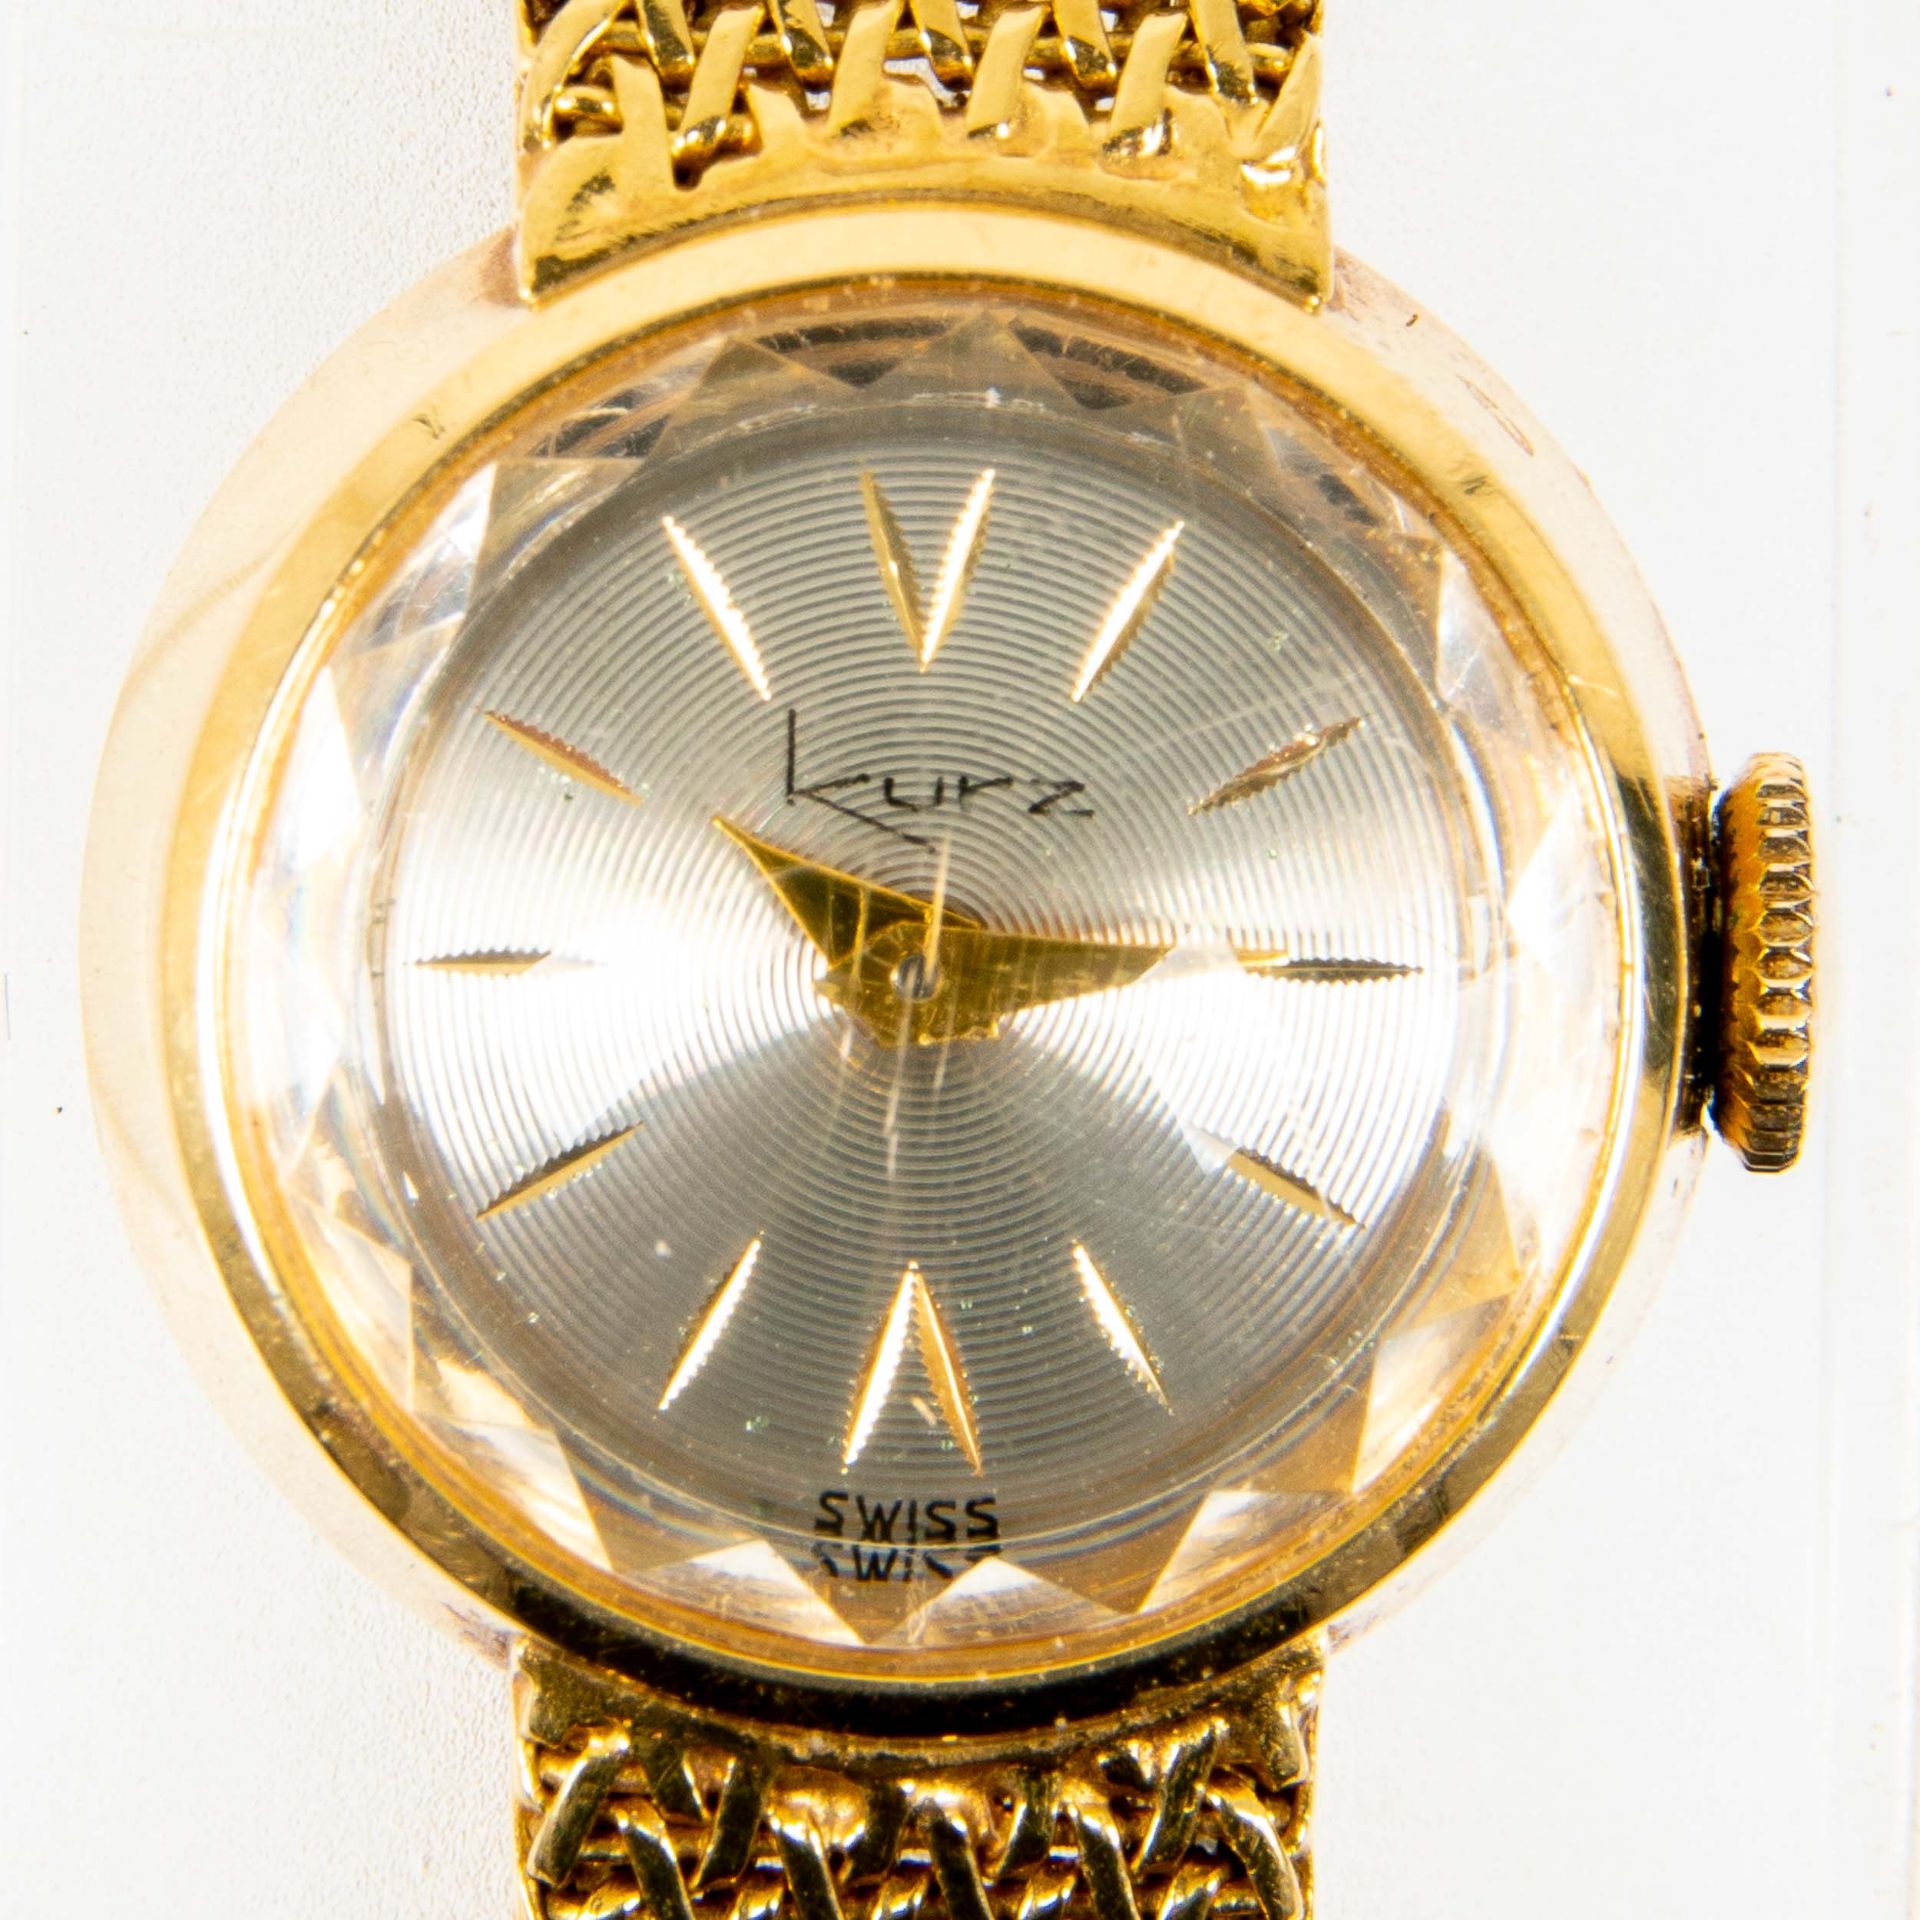 Klassische Damenarmbanduhr der Marke "KURZ-SWISS", Gehäuse und Armband in 750er Gelbgold, Werk läuf - Image 5 of 9